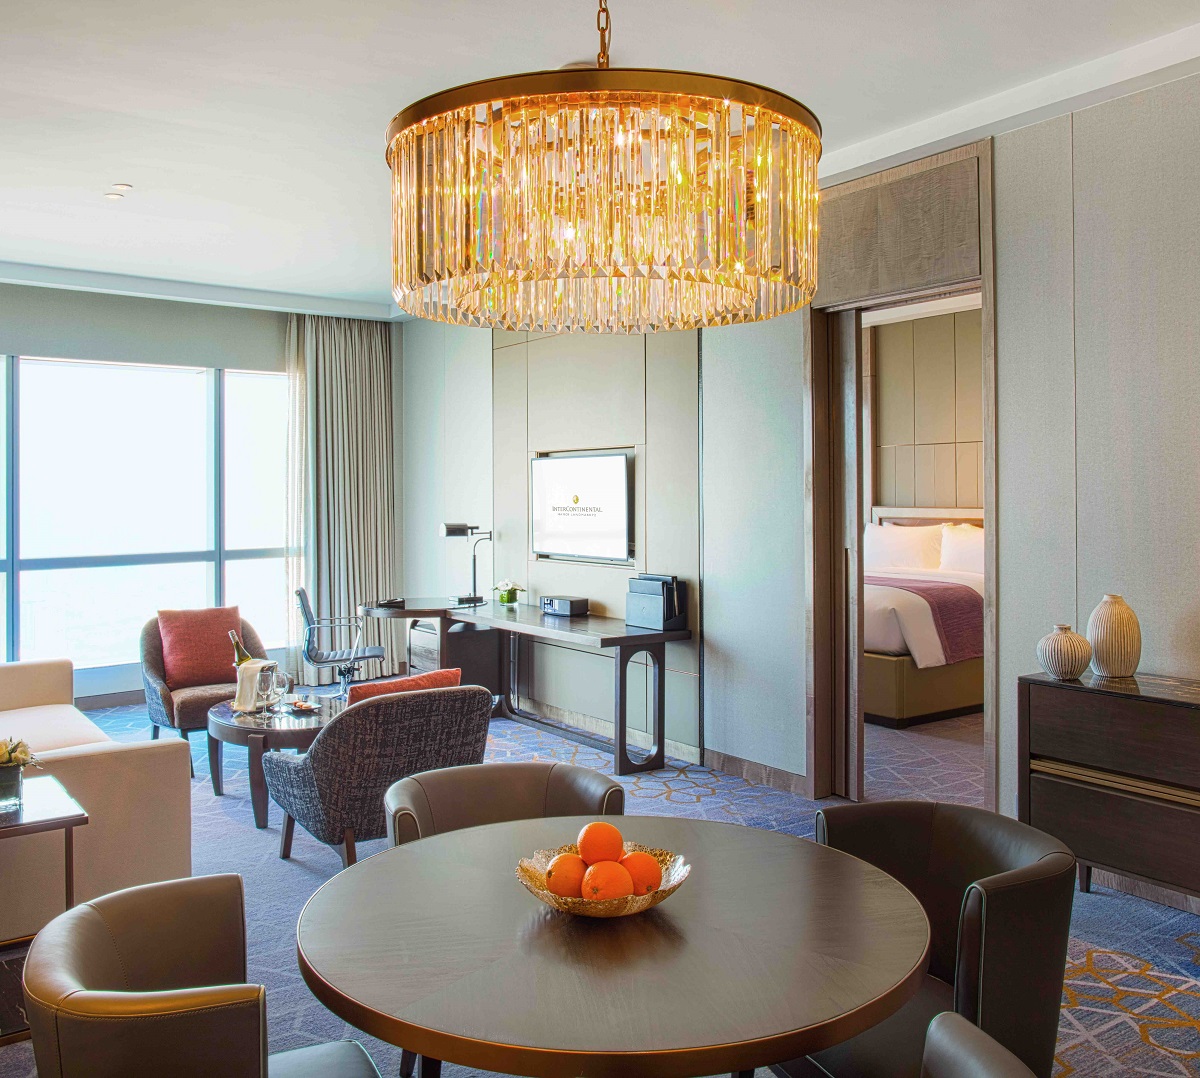 Phòng Royal Suite tại intercontinental hanoi landmark72 khách sạn 5 sao với tiện nghi sang trọng, đặc quyền Club InterContinental và tầm nhìn toàn cành thành phố Hà Nội